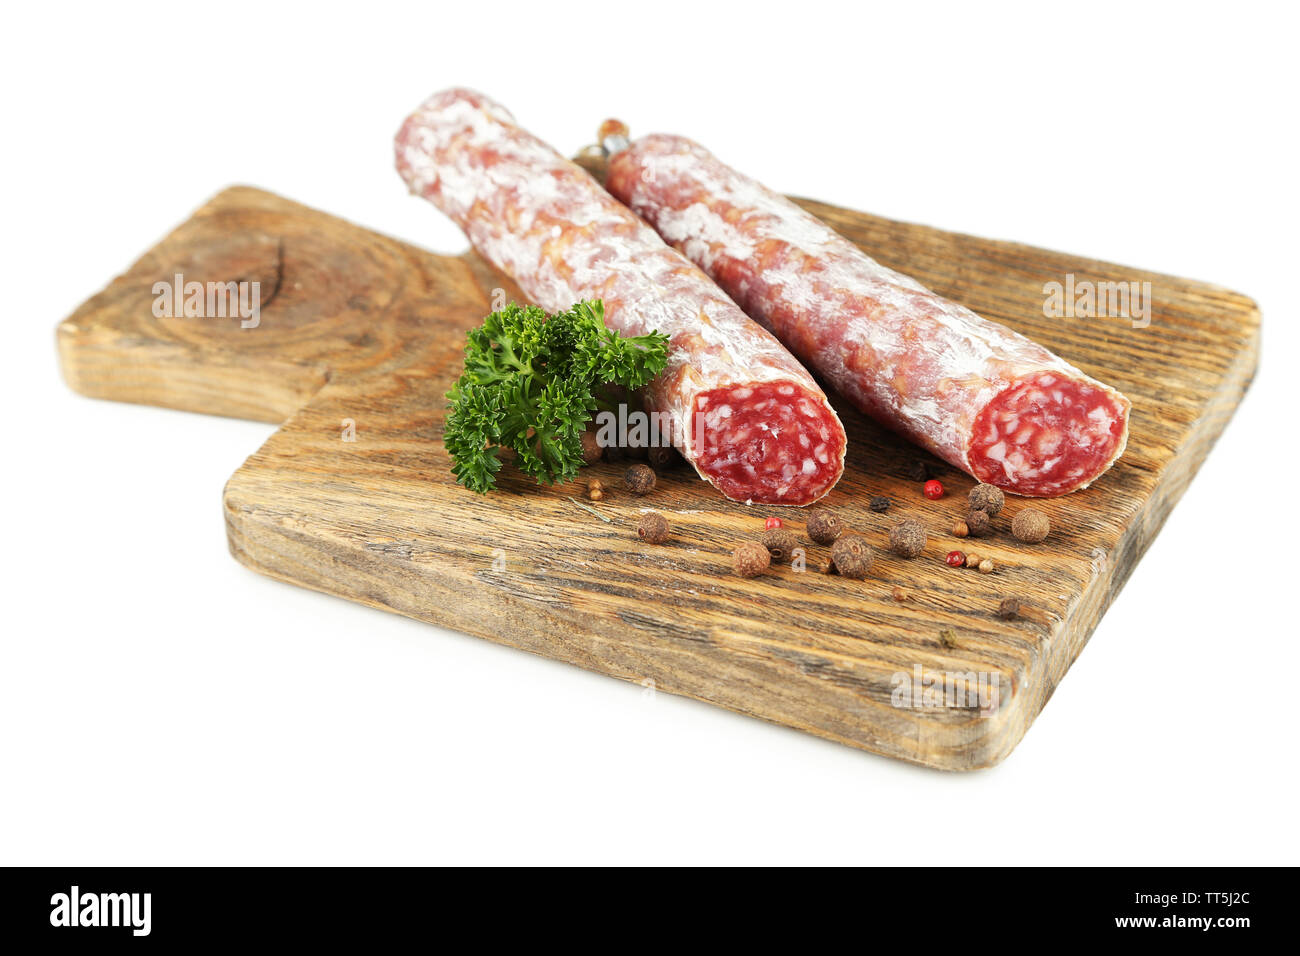 Venison sausage (salami) Cut Pictures Stock Alamy & Images Out 